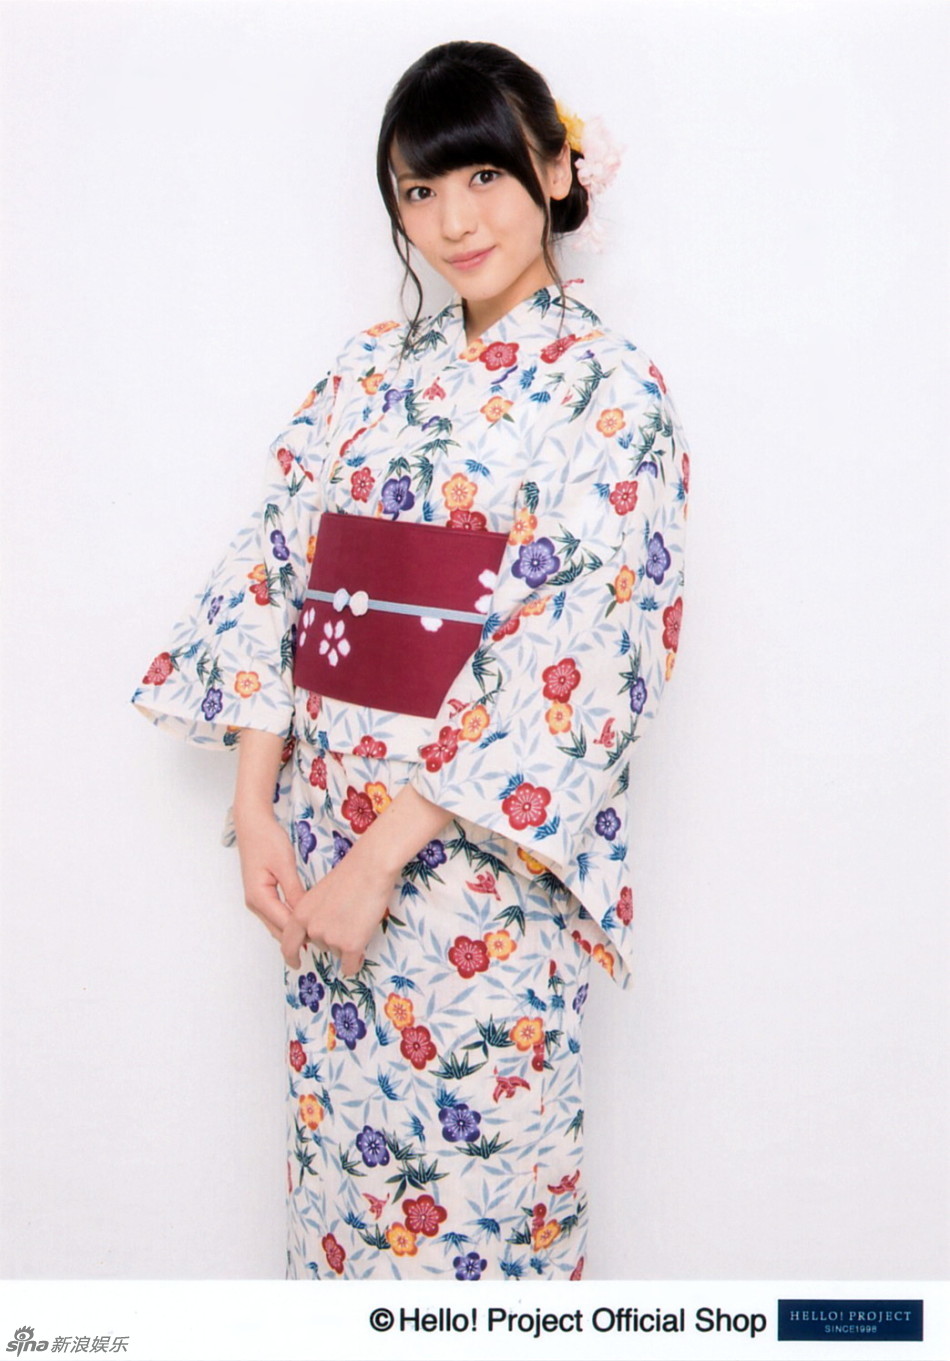 日本女团成员矢岛舞美和服写真 端庄优雅